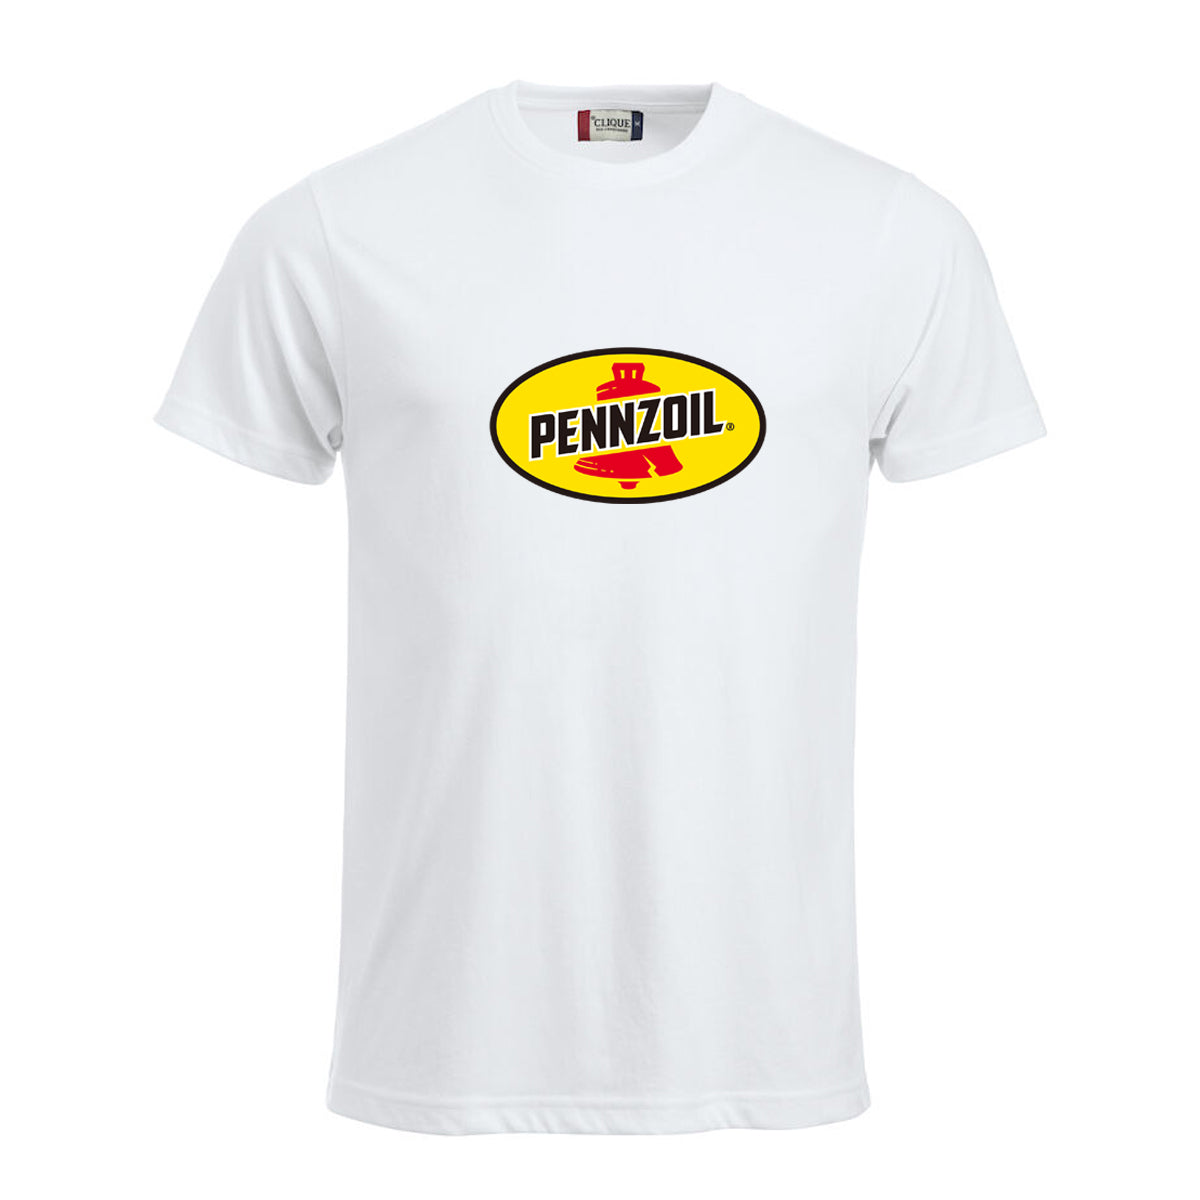 Pennzoil - t-skjorte